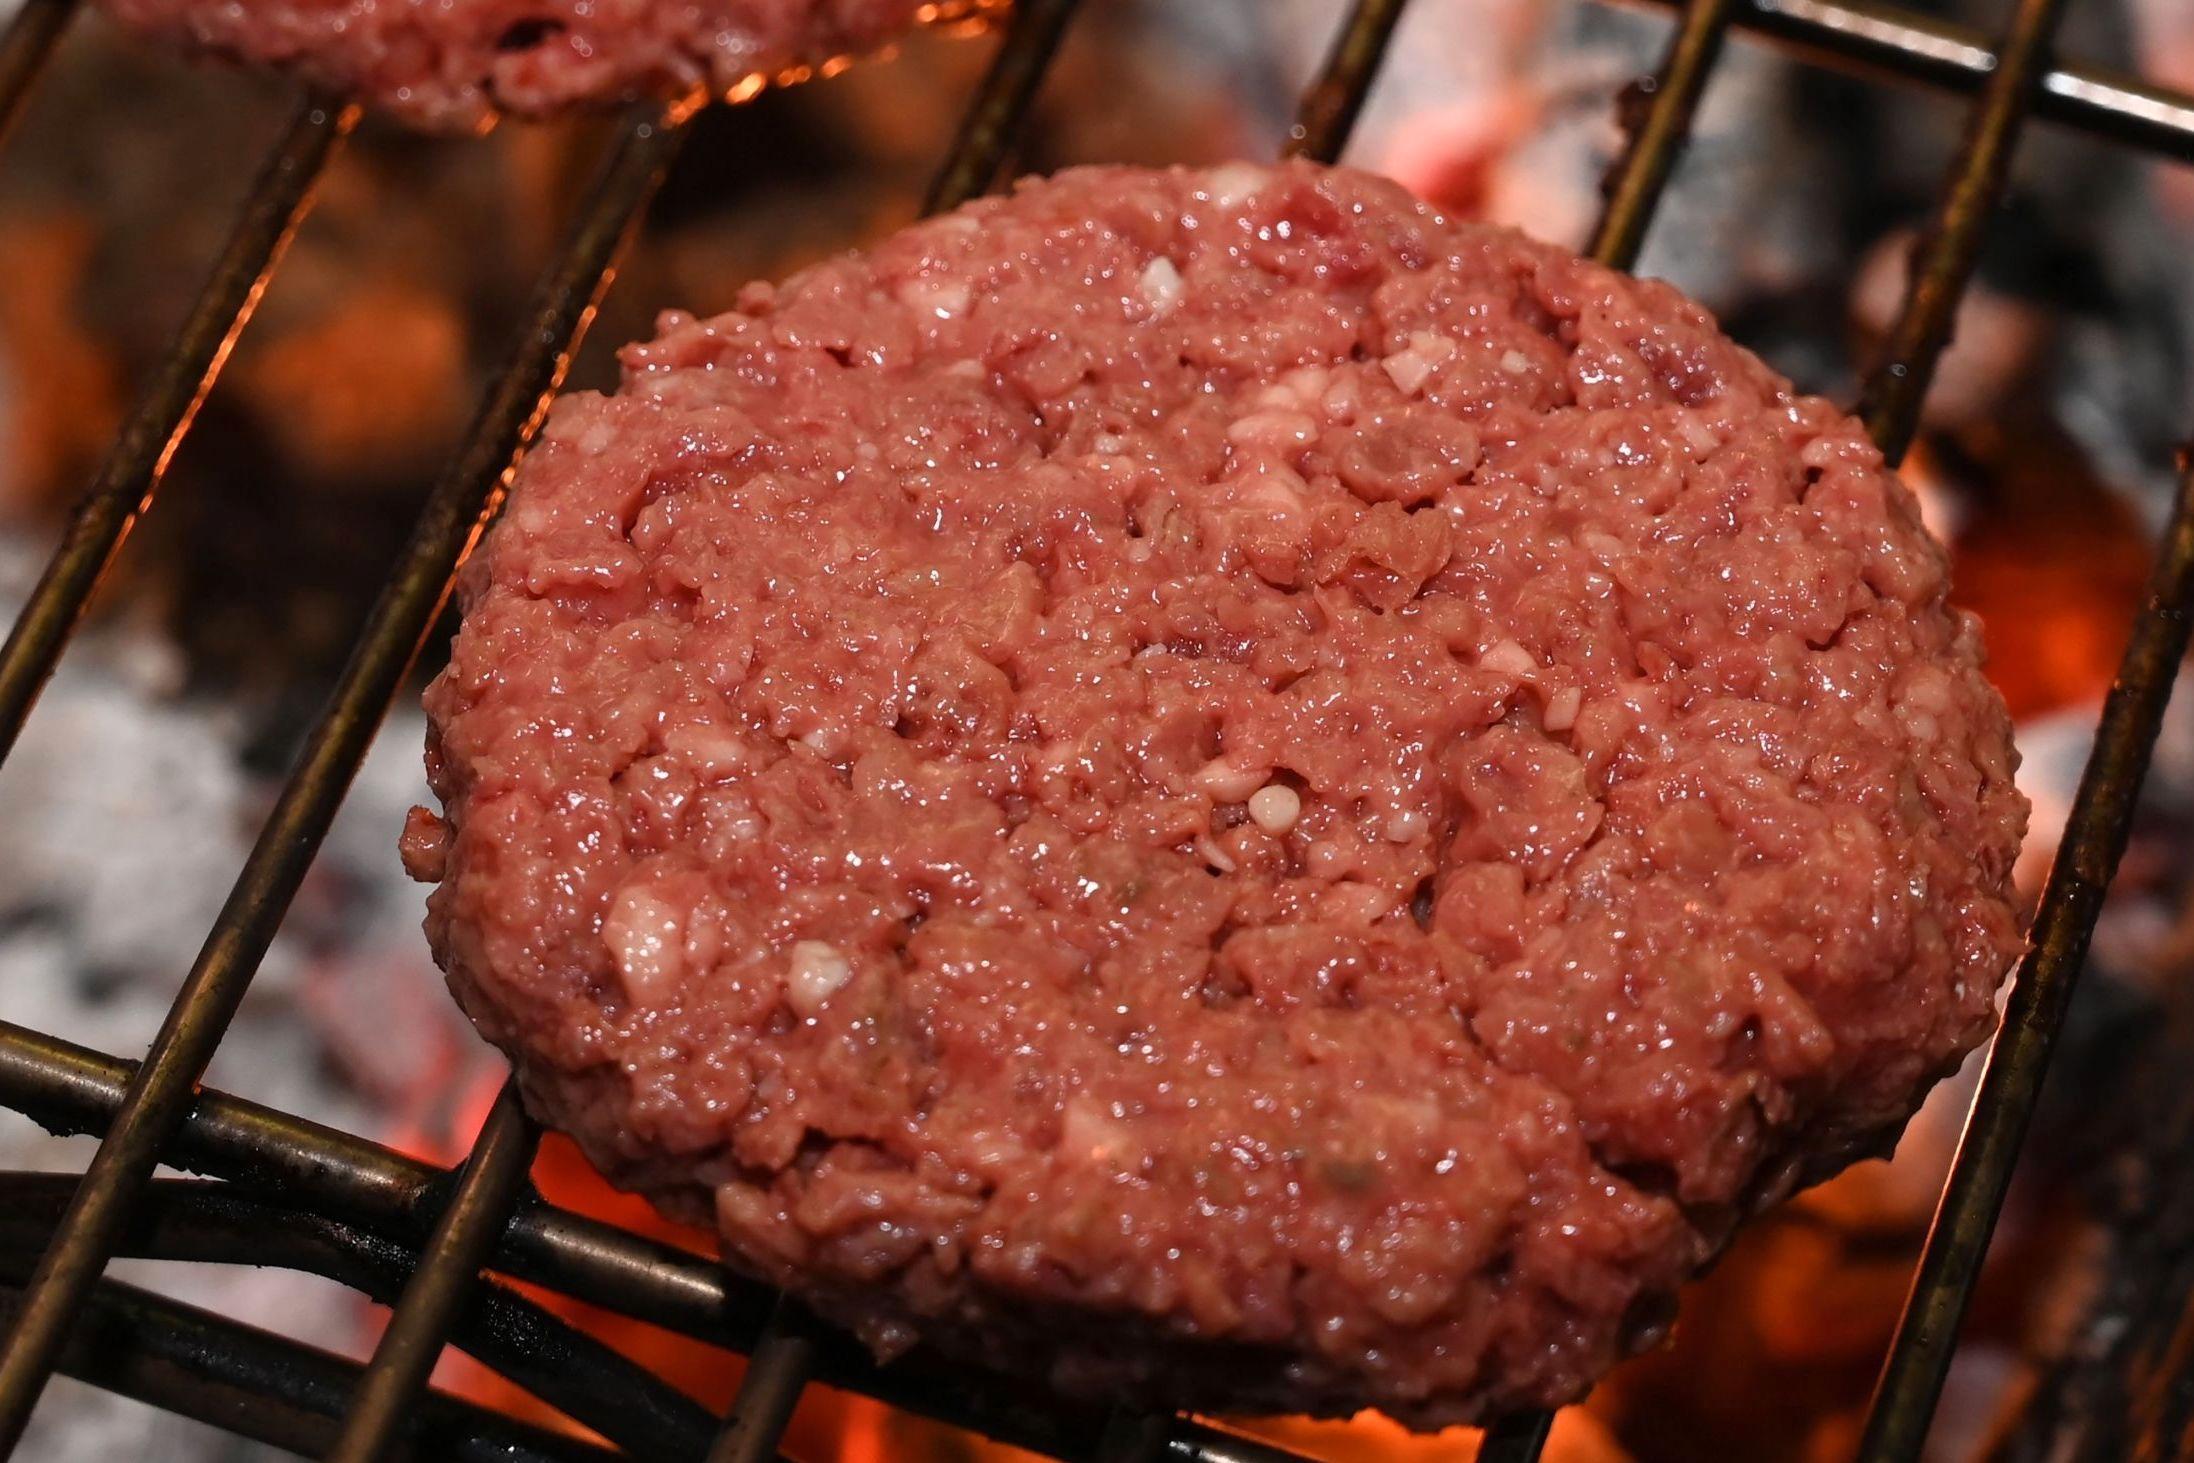 SER «EKTE» UT: Burgeren selskapet Impossible Foods lager skal både se ut, og smake, som storfekjøtt. Foto: Robyn Beck/AFP